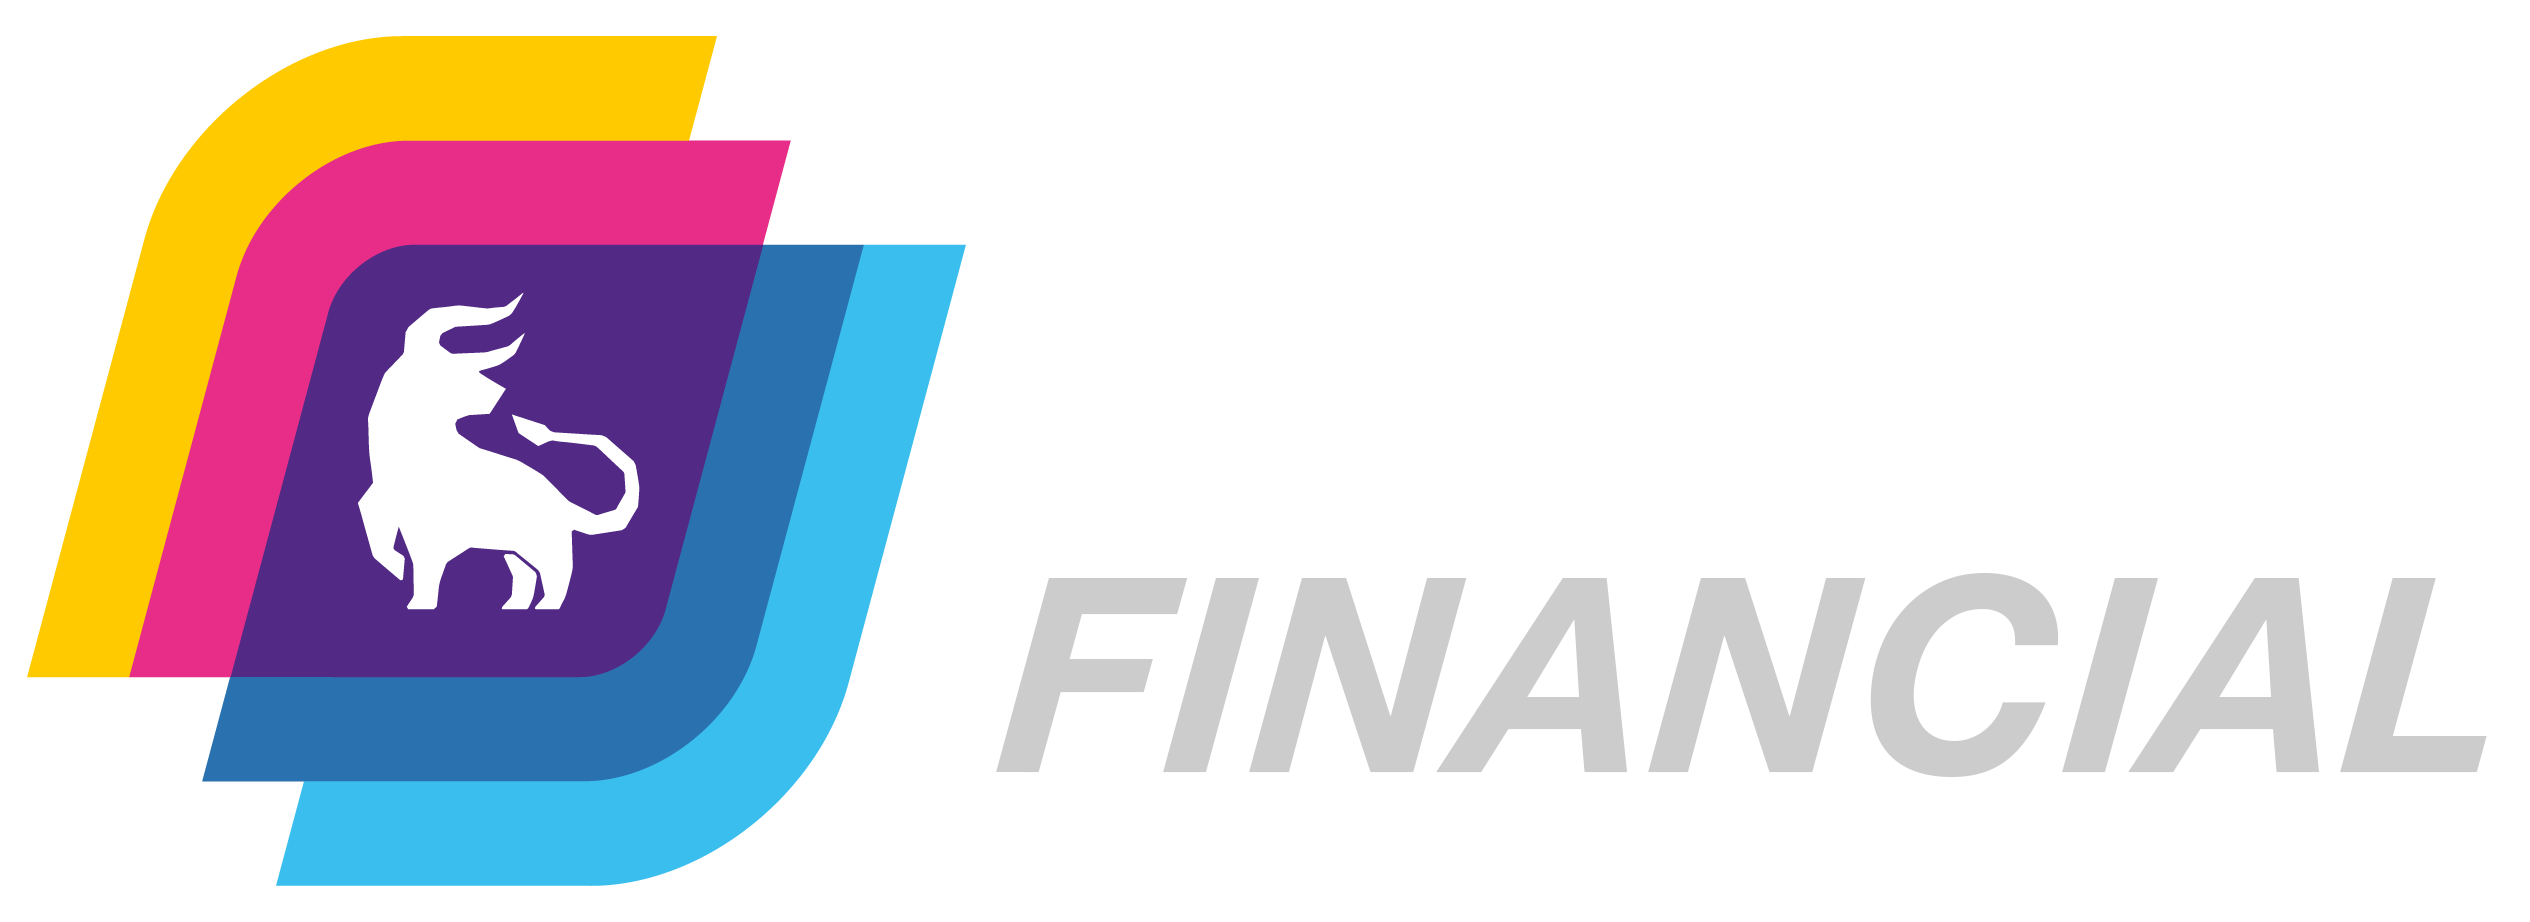 UXD Financial